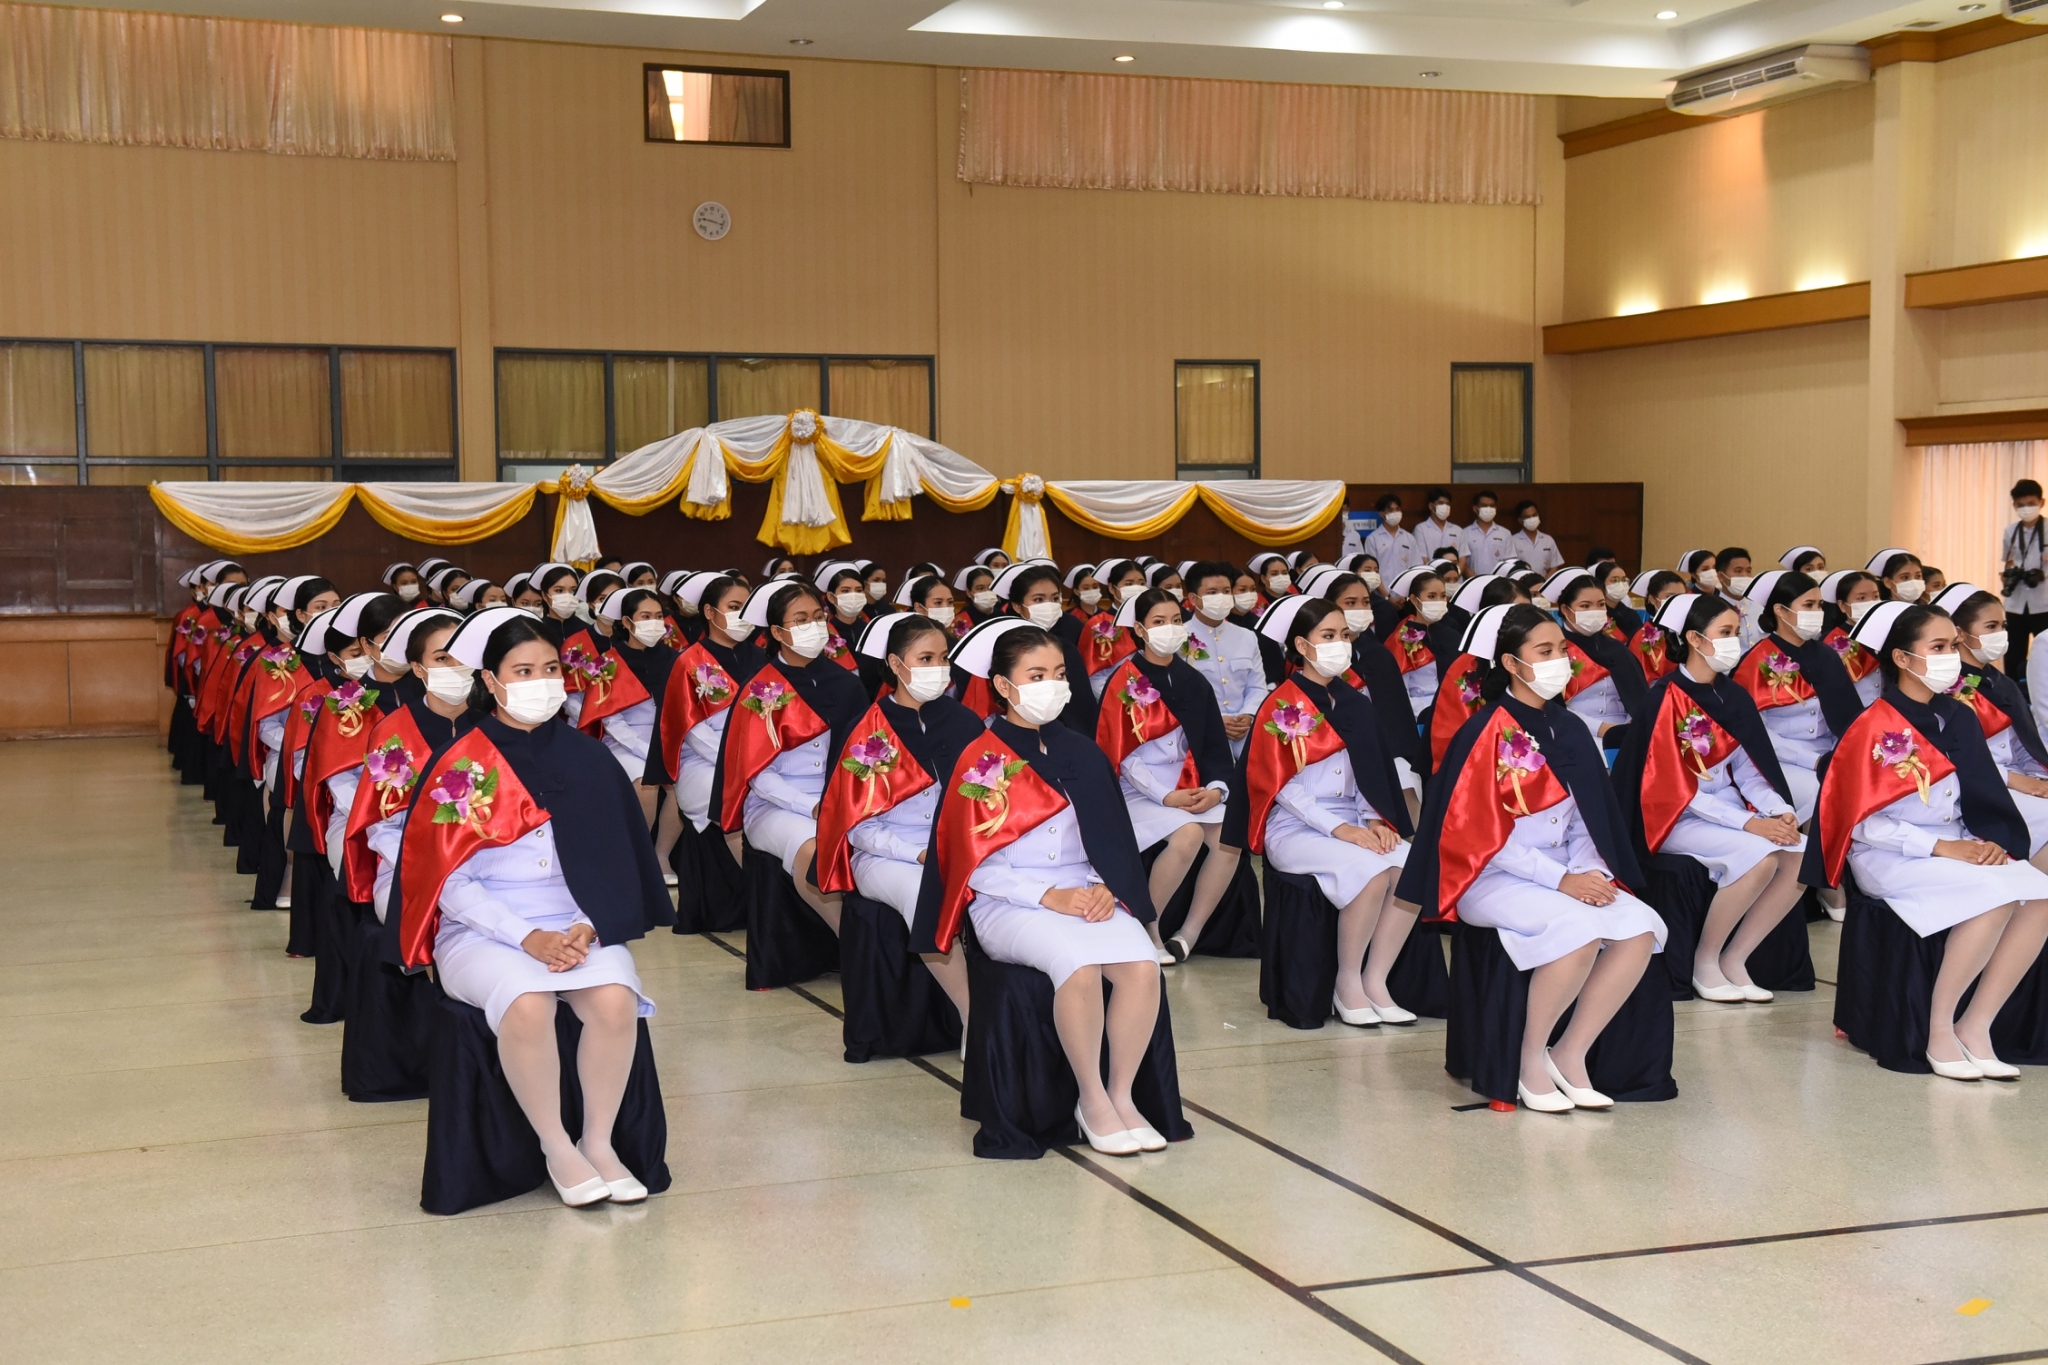 พิธีสำเร็จการศึกษา นักศึกษาหลักสูตรพยาบาลศาสตรบัณฑิต ปีการศึกษา 2563